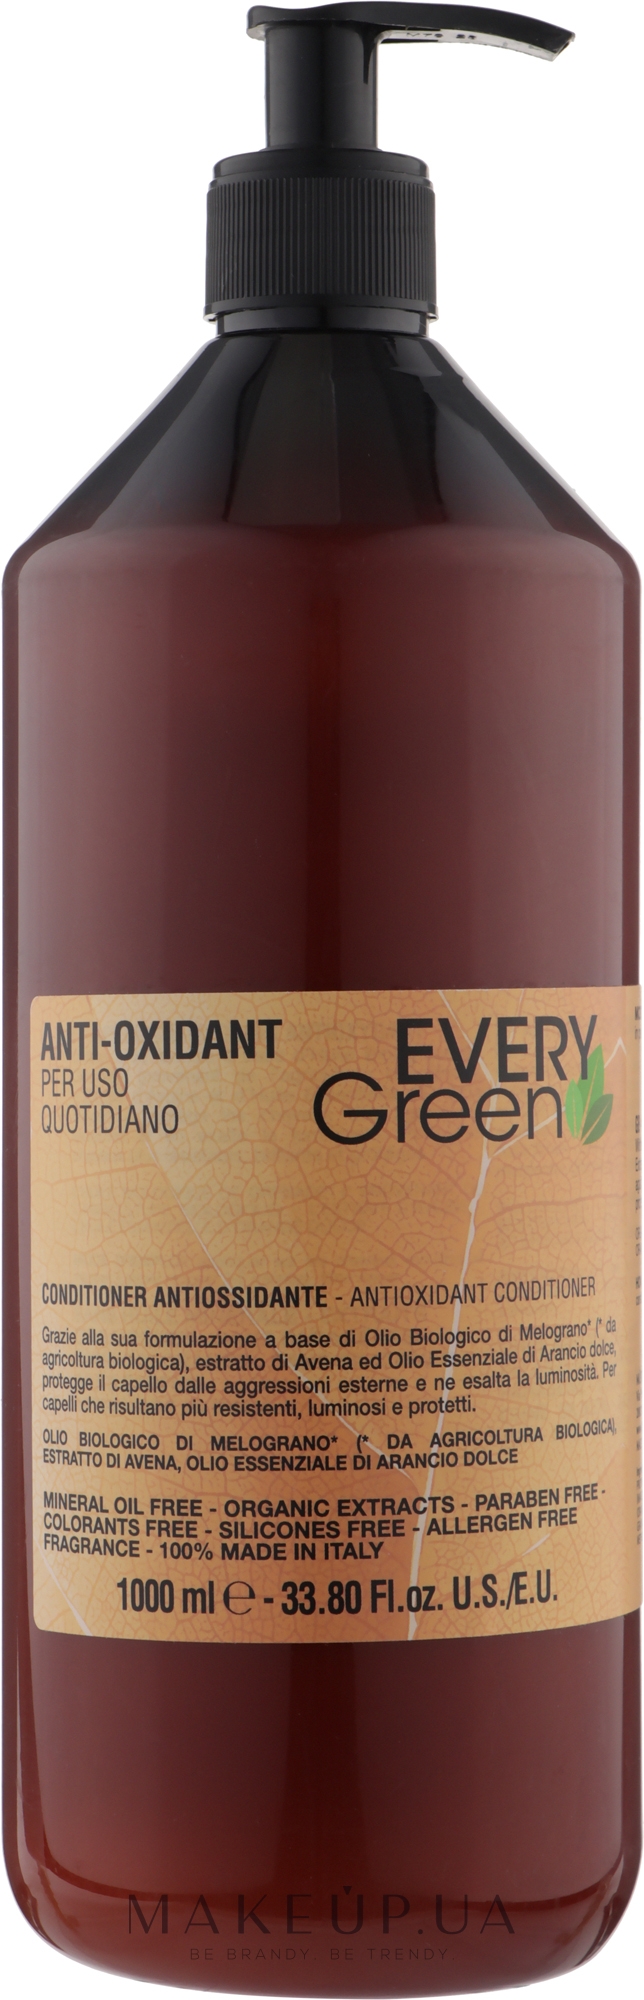 Анти-оксидантный кондиционер для ежедневного применения - EveryGreen Anti-Oxidant Conditioner — фото 1000ml